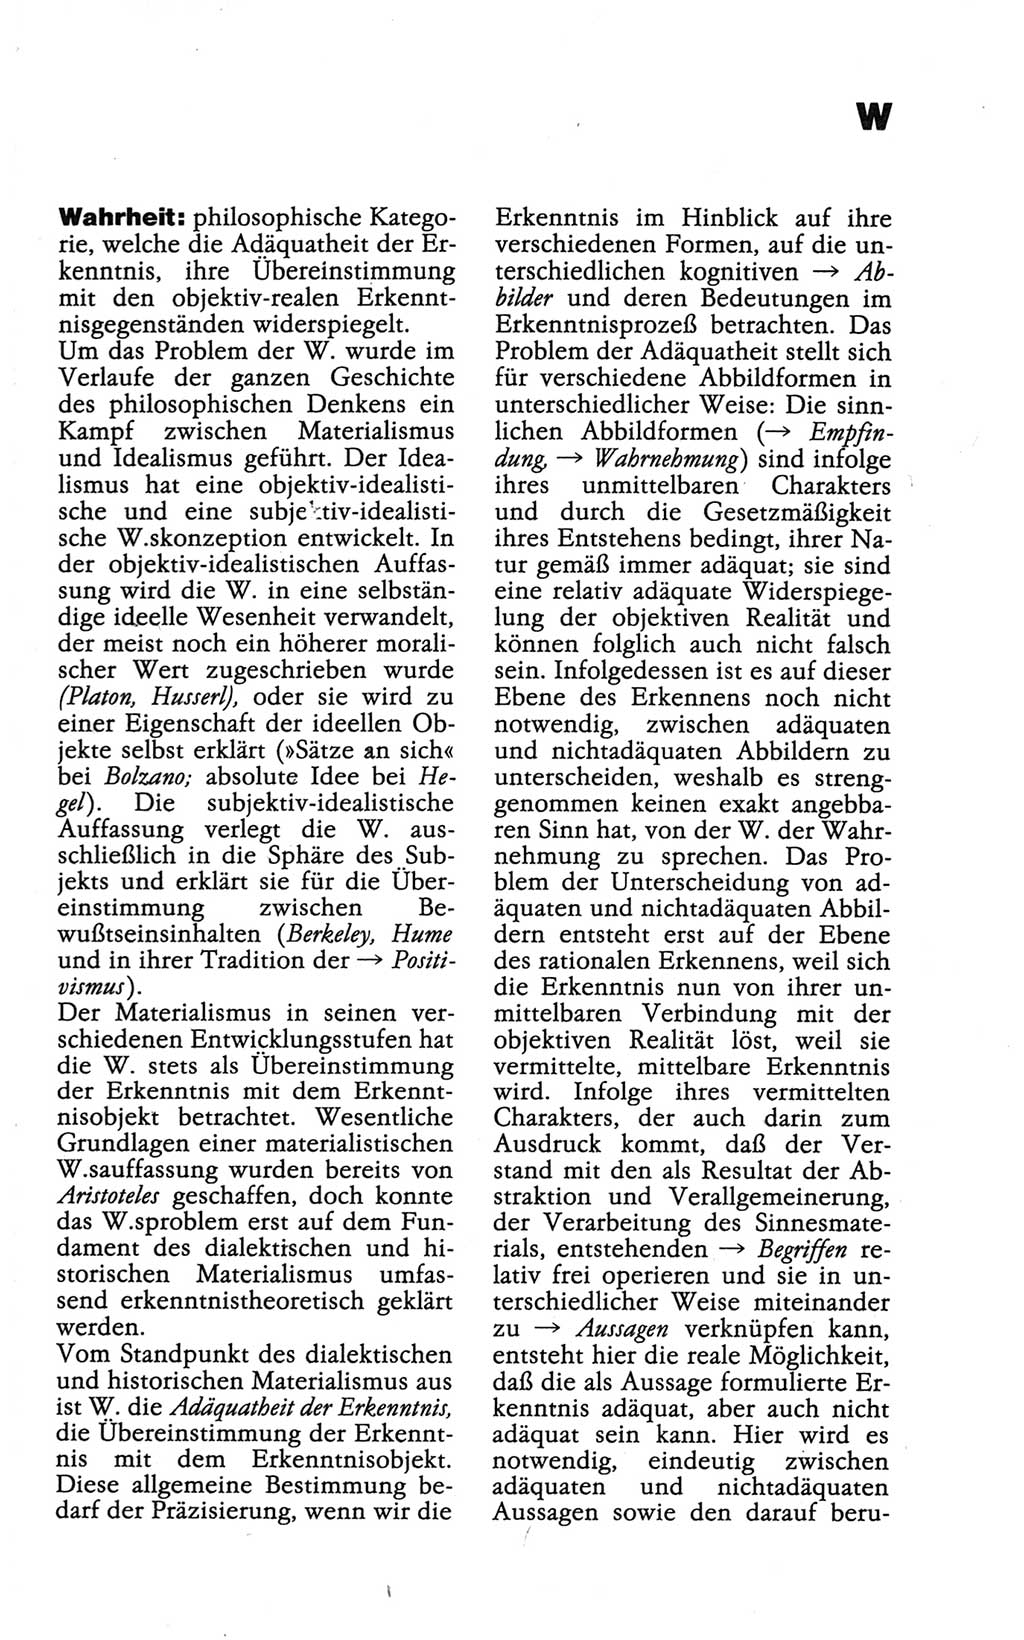 Wörterbuch der marxistisch-leninistischen Philosophie [Deutsche Demokratische Republik (DDR)] 1986, Seite 547 (Wb. ML Phil. DDR 1986, S. 547)